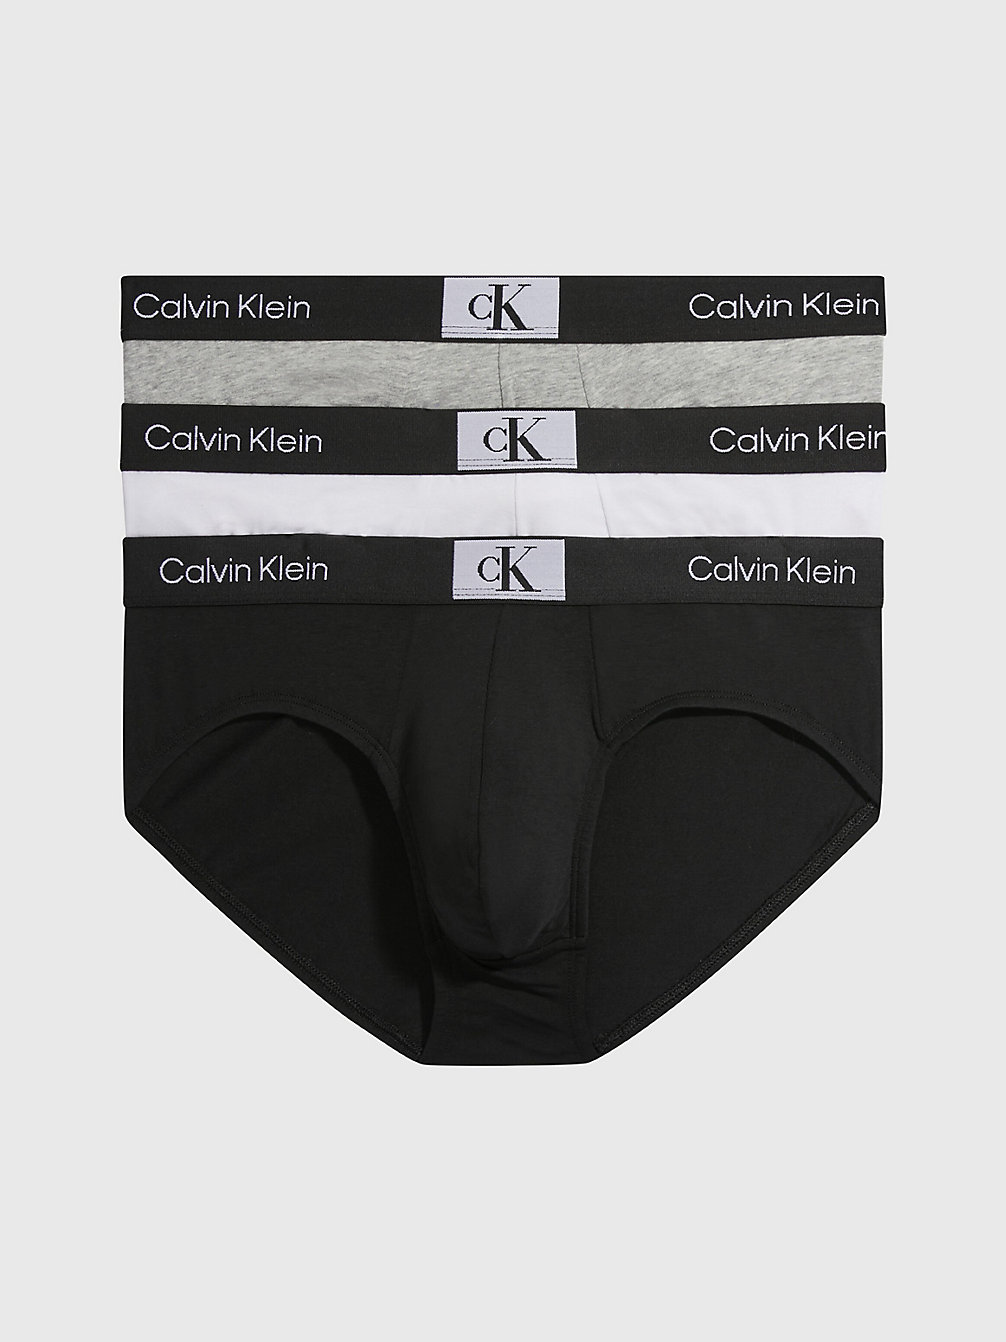 BLACK/WHITE/GREY HEATHER 3er-Pack Slips - Ck96 undefined Herren Calvin Klein